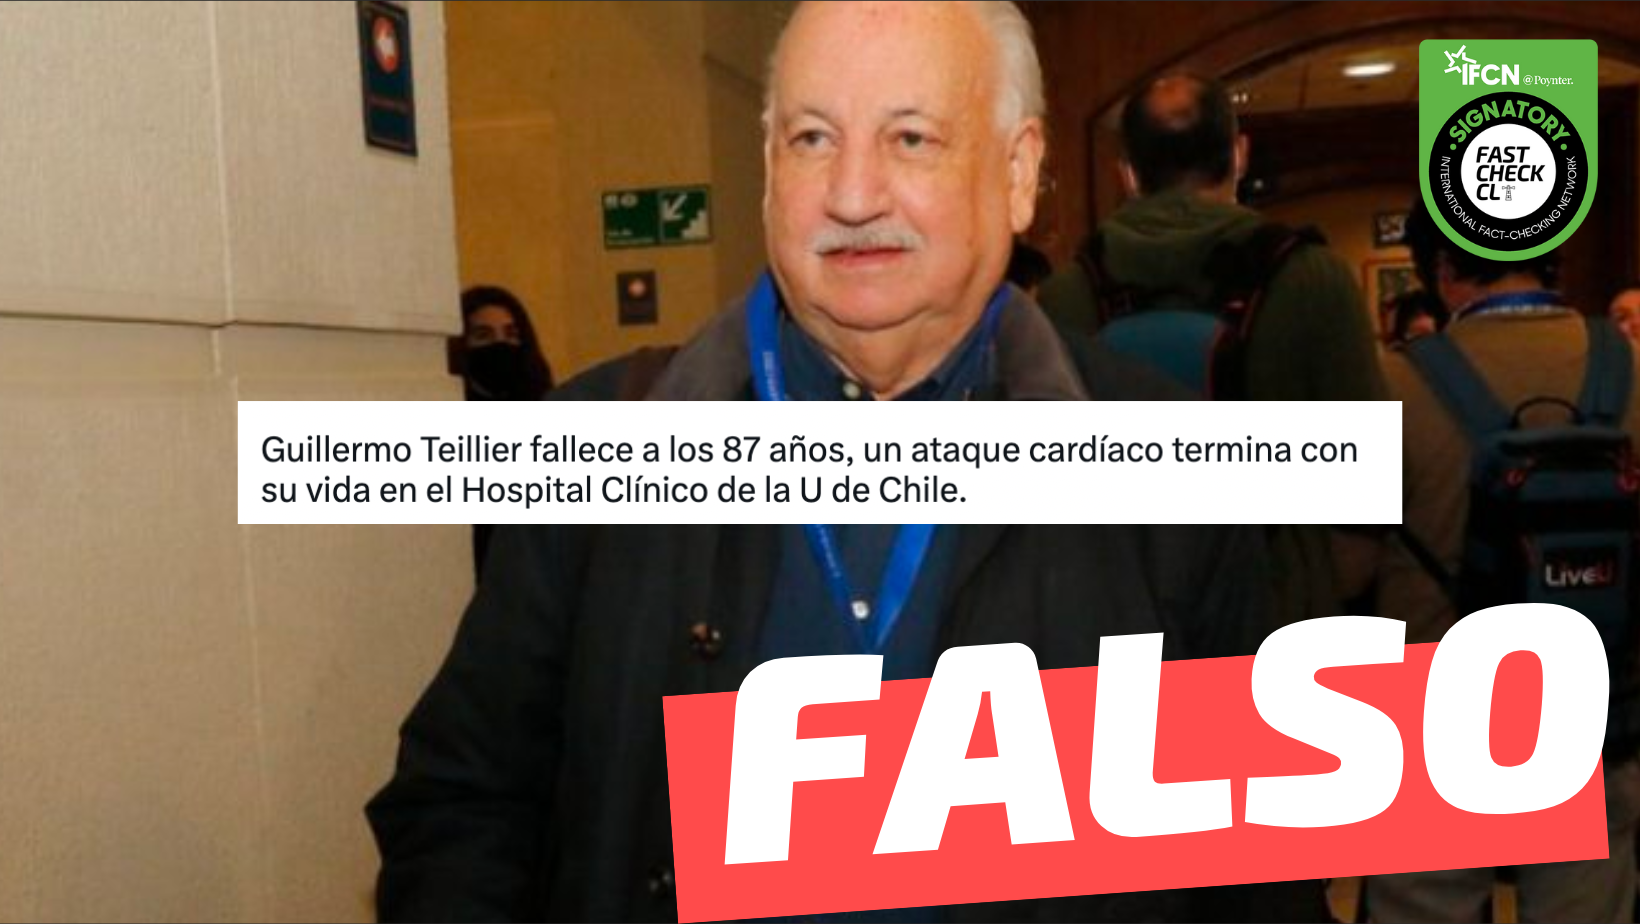 You are currently viewing “Guillermo Teillier fallece a los 87 años, un ataque cardíaco termina con su vida en el Hospital Clínico de la U. de Chile”: #Falso